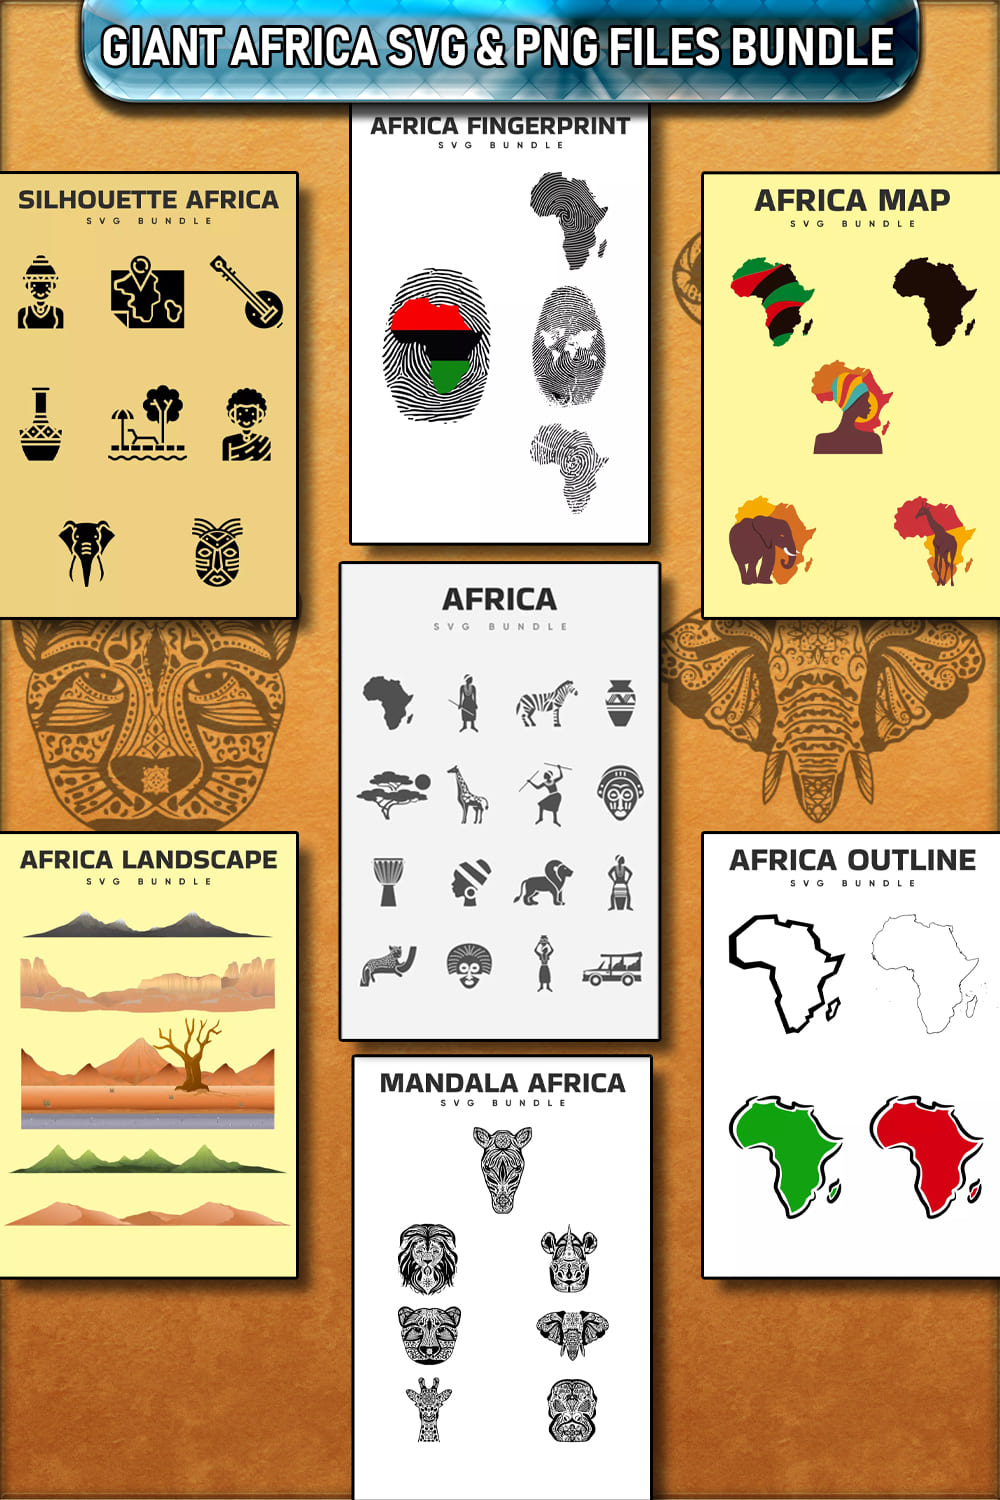 Giant Africa SVG PNG Files Bundle Pinterest.